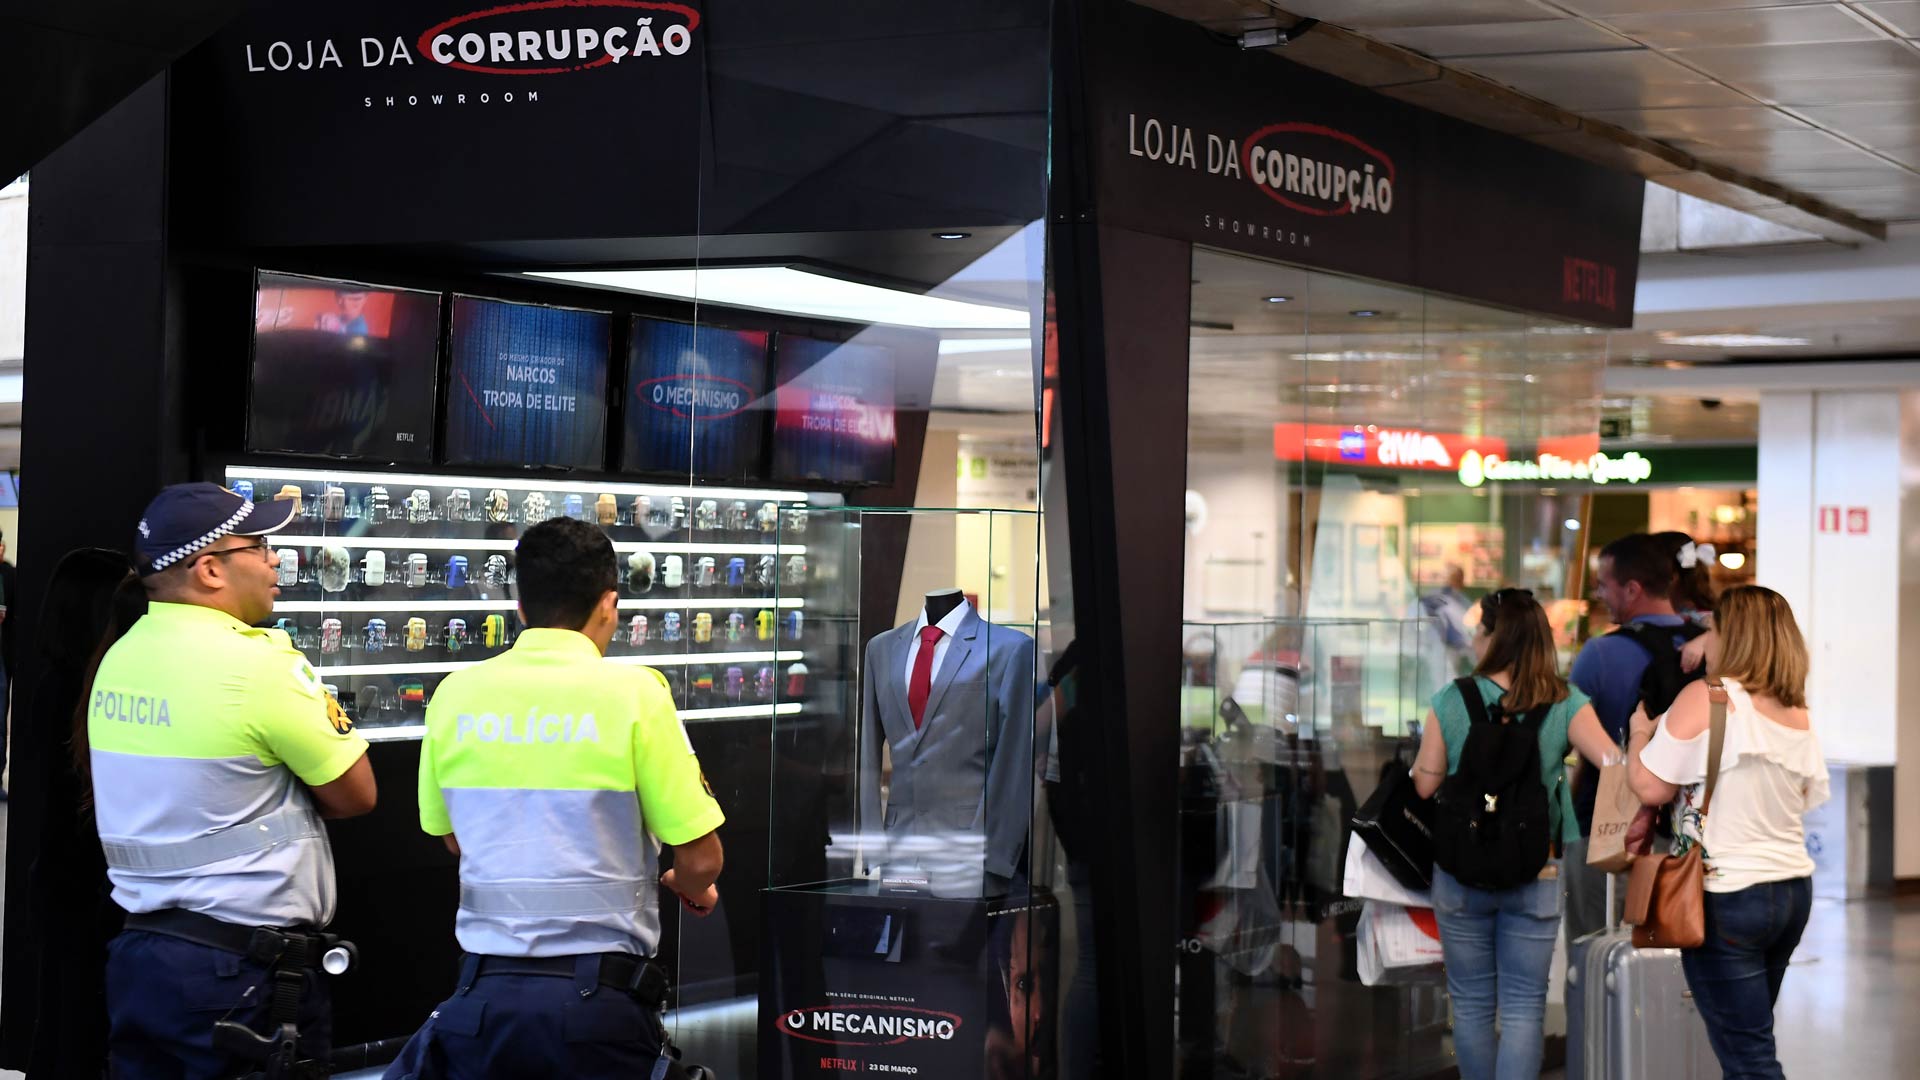 Netflix crea "tiendas de la corrupción" para promocionar su serie El Mecanismo